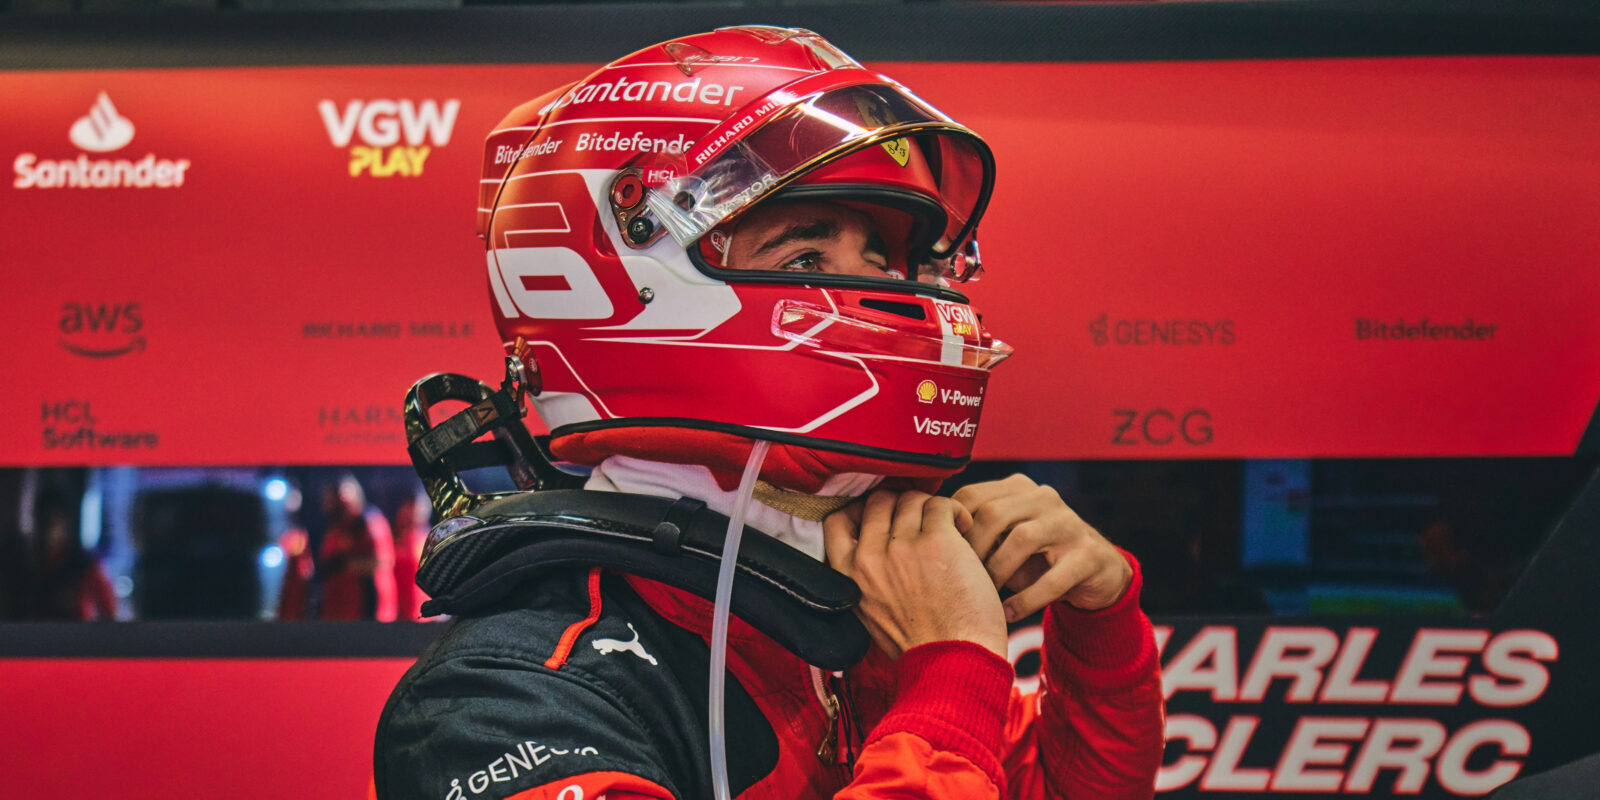 Ferrari nepřišlo na příčinu Leclercových problémů